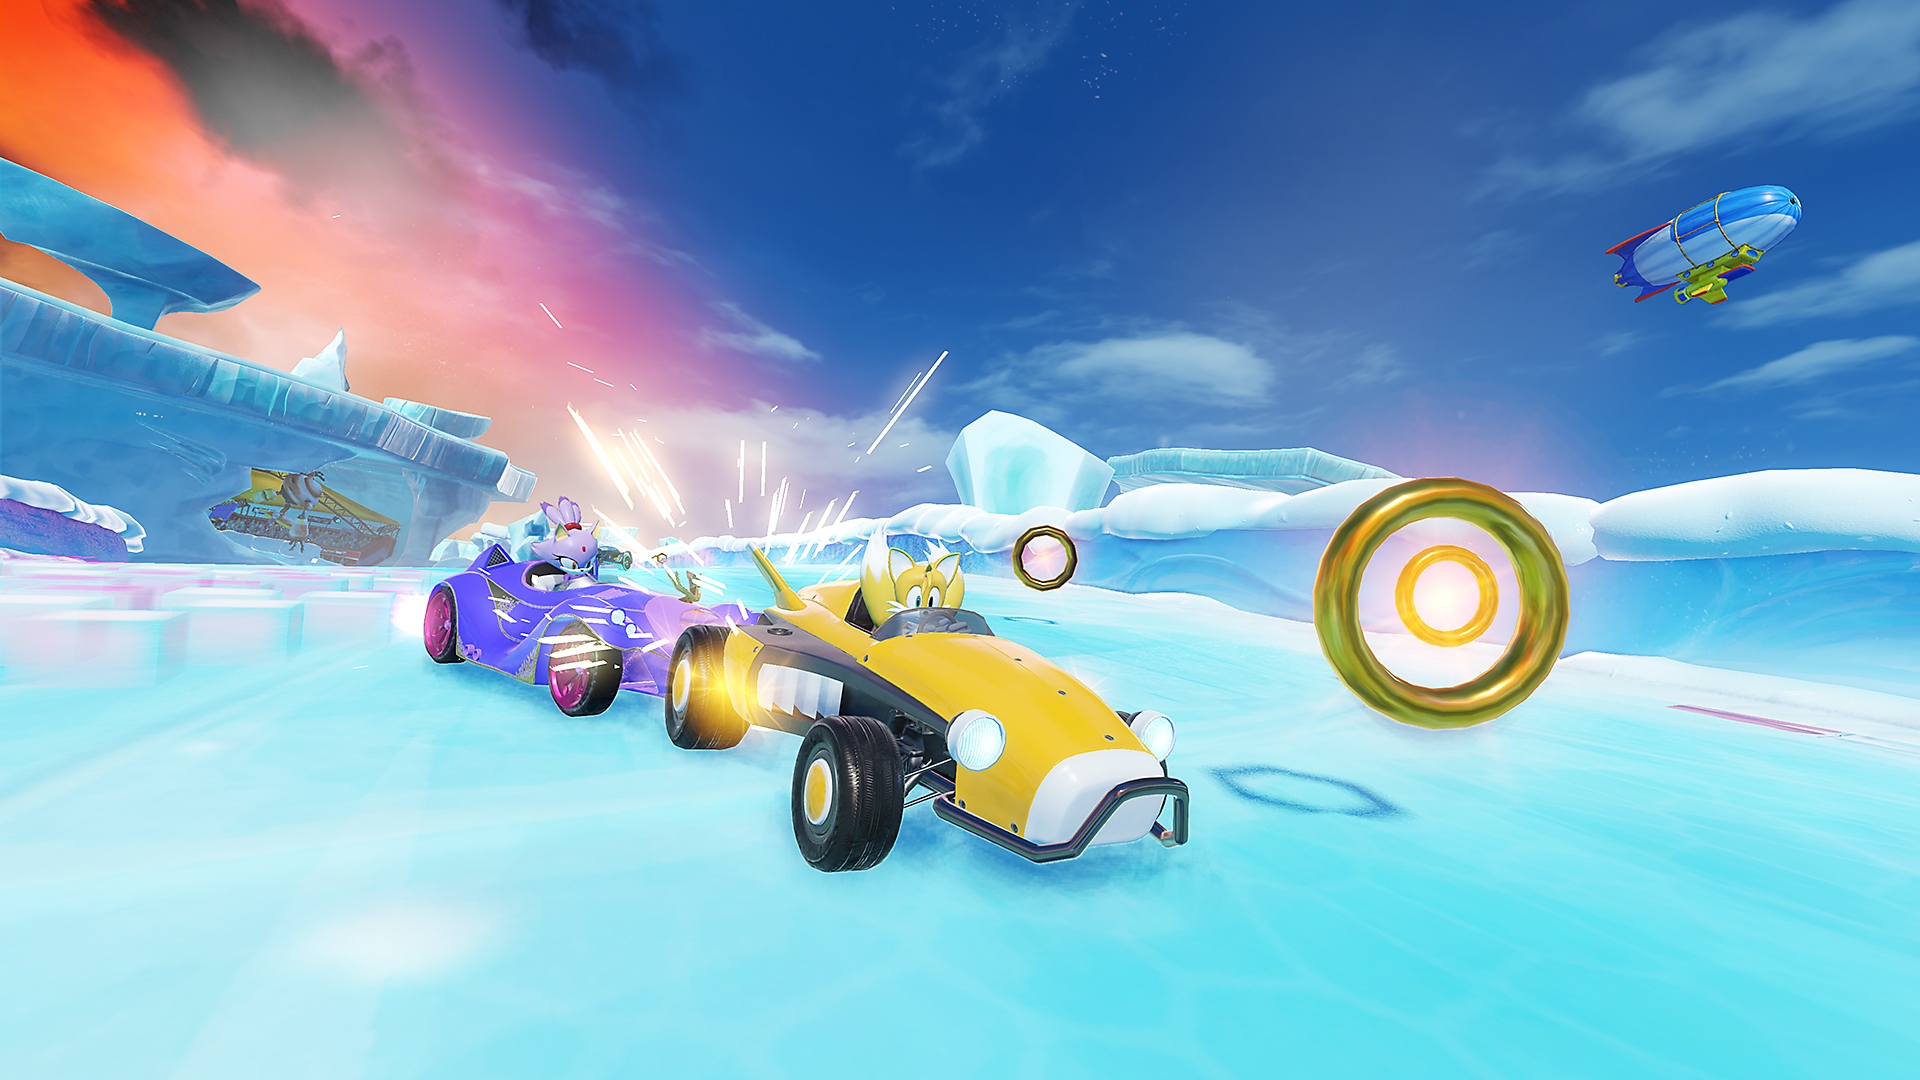 Screenshot von Team Sonic Racing, der Tails in einem gelben Auto auf einer eisigen Strecke zeigt